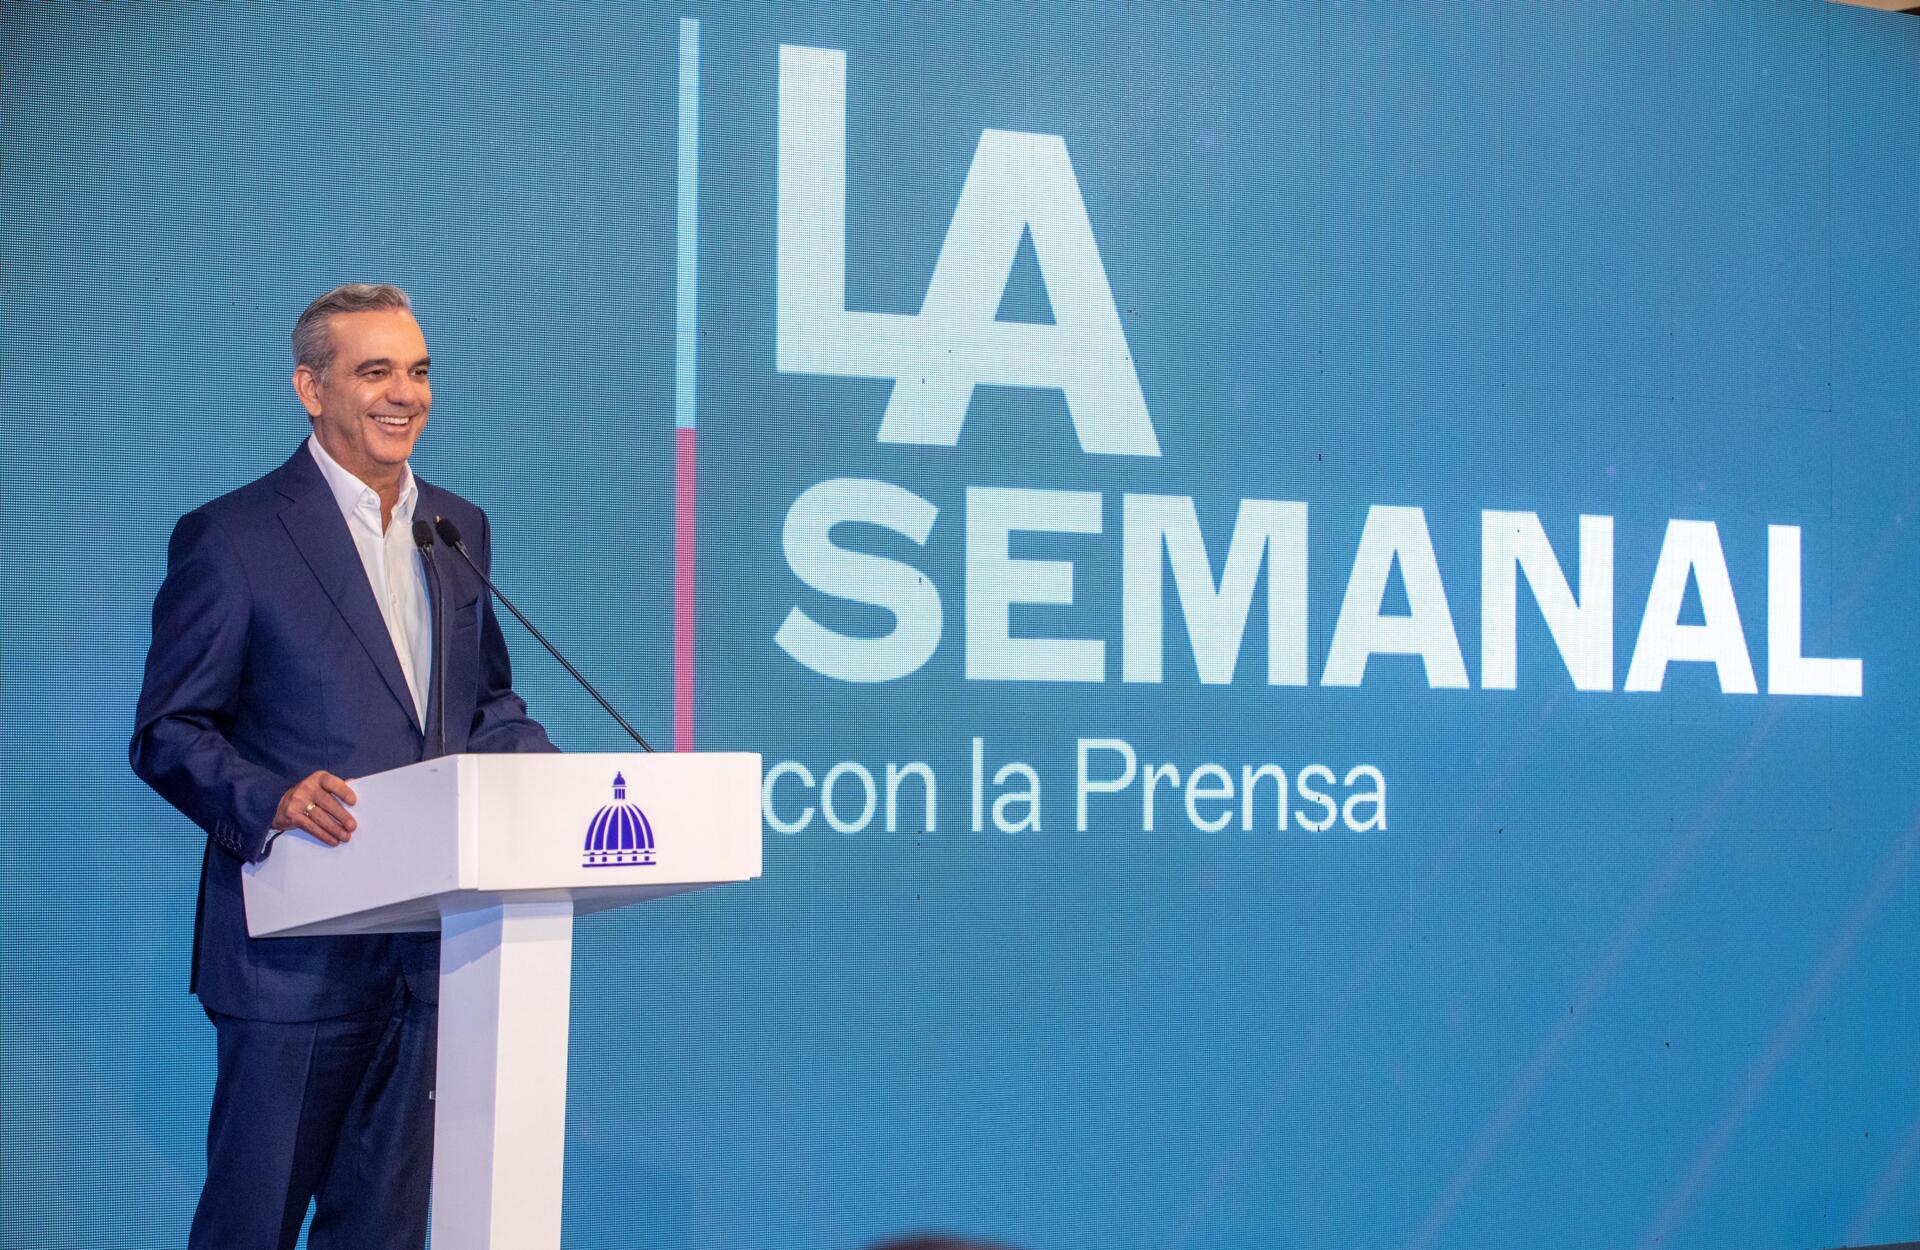 Presidente Abinader realizará LA Semanal con la Prensa desde Santiago el próximo lunes